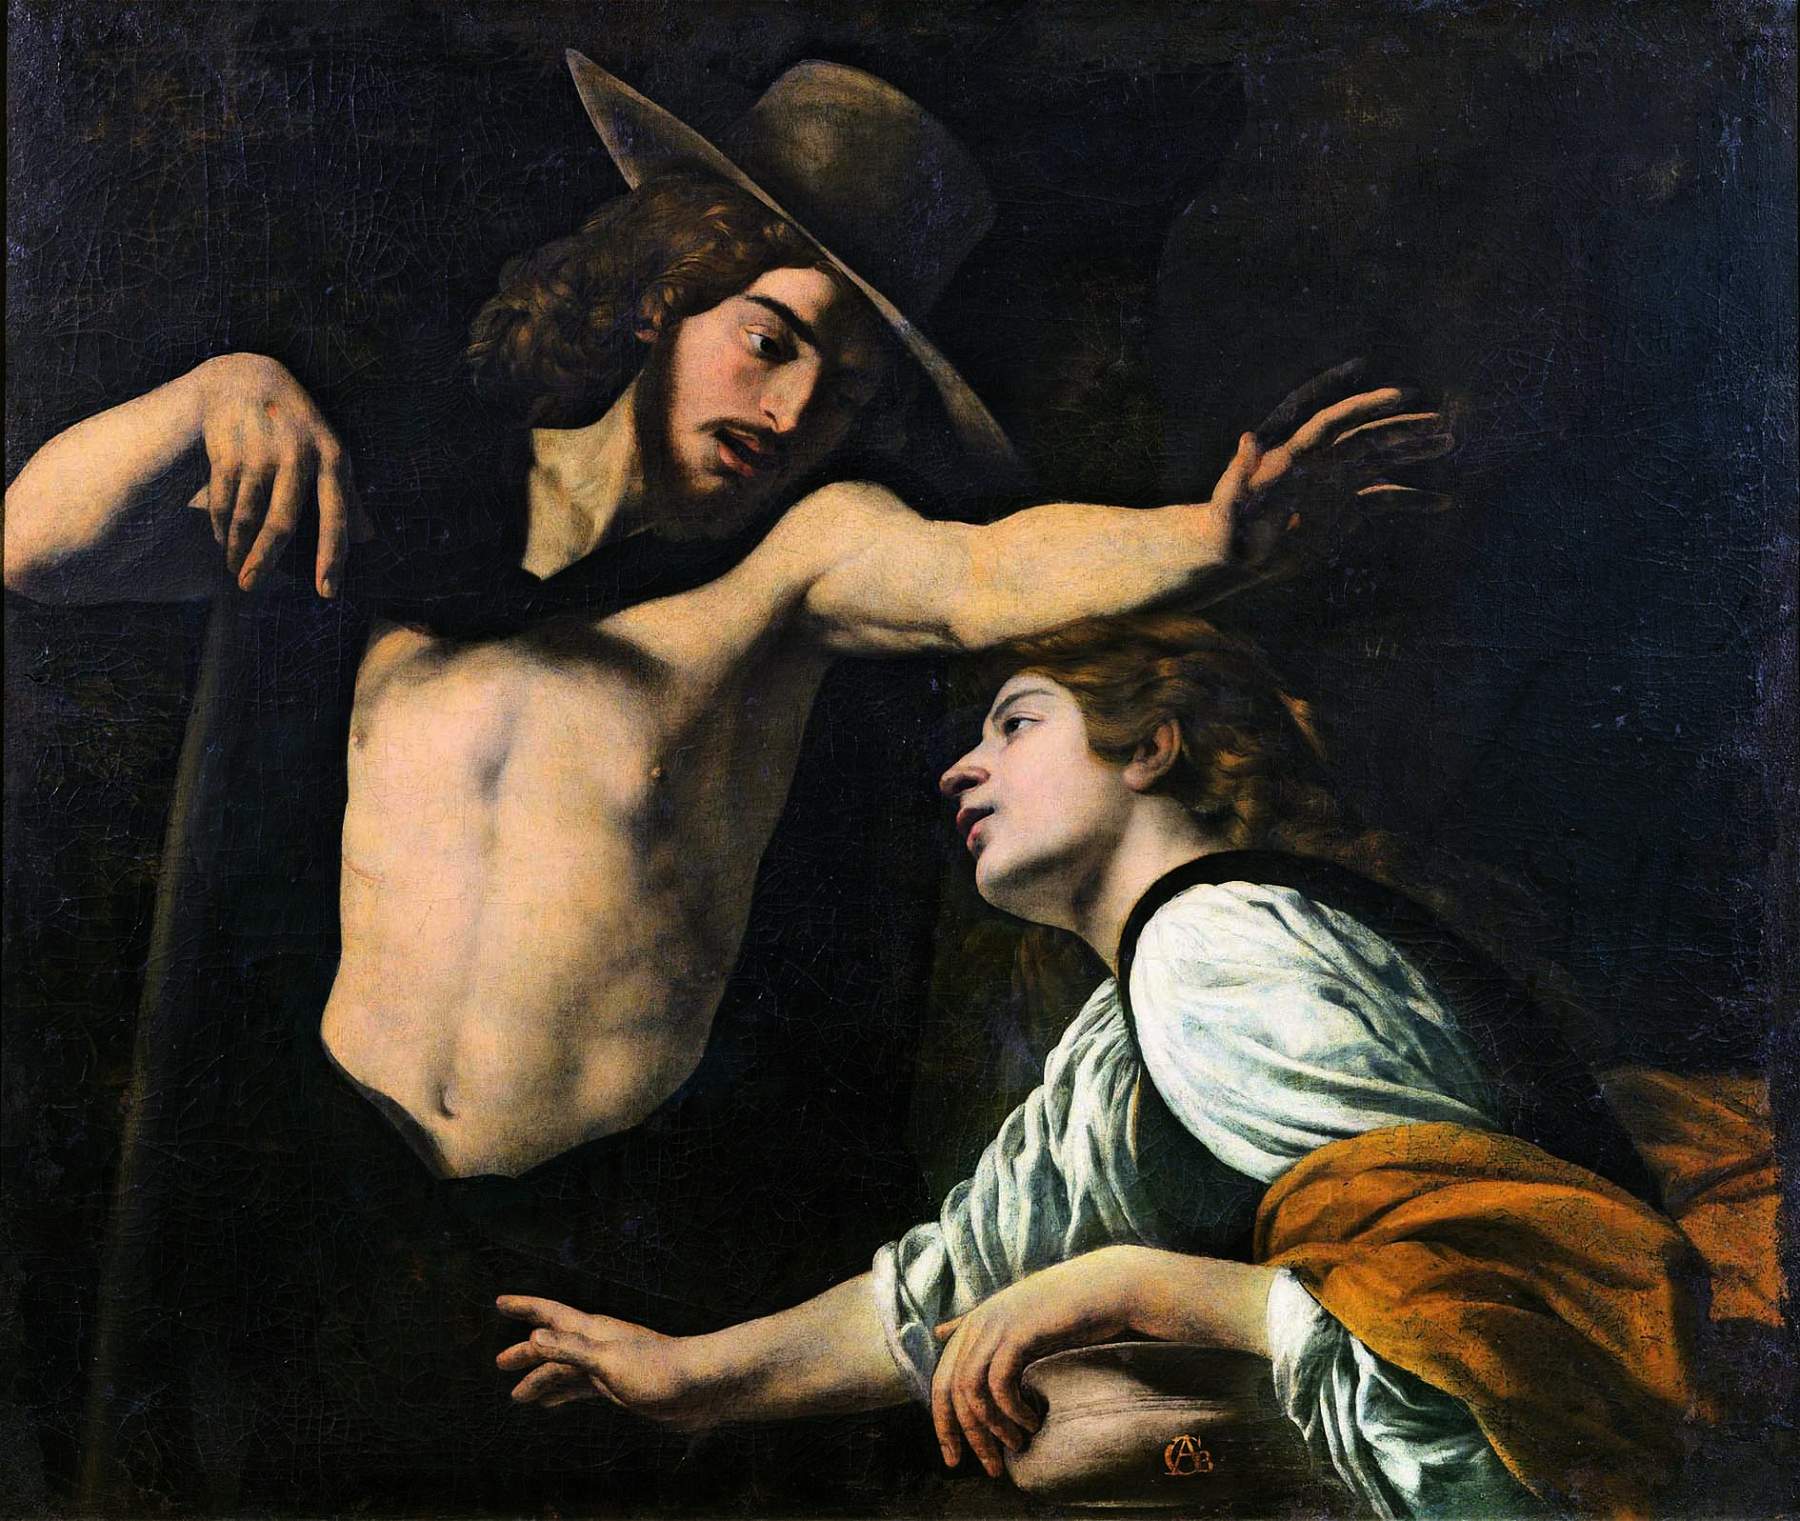 Après Caravaggio : une exposition à Prato sur le XVIIe siècle napolitain dans deux collections toscanes